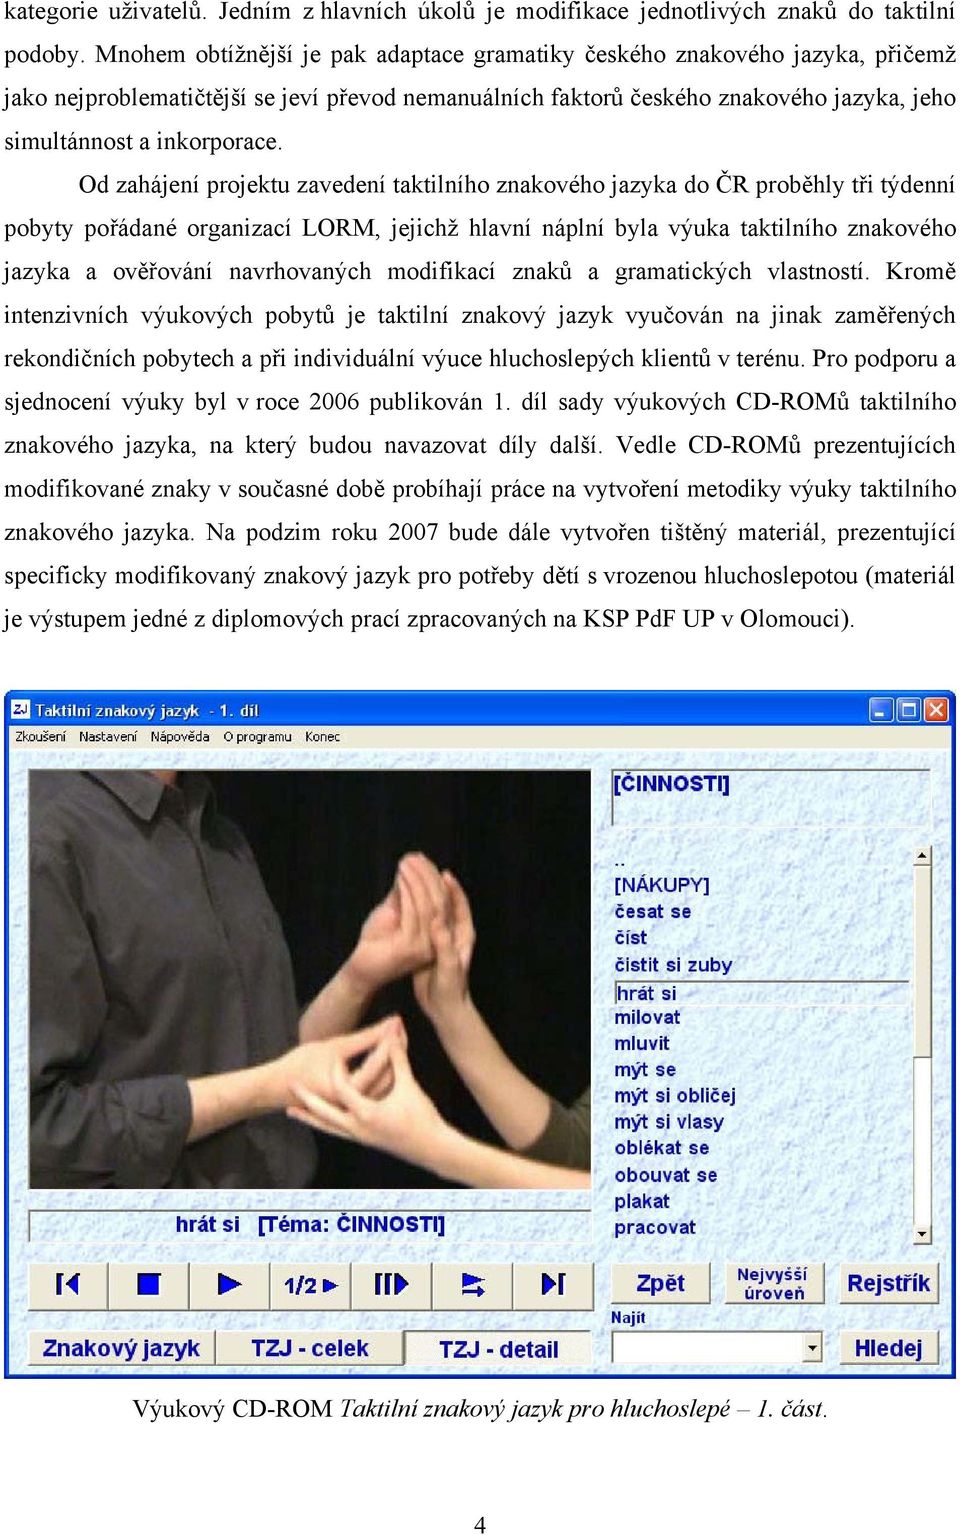 Od zahájení projektu zavedení taktilního znakového jazyka do ČR proběhly tři týdenní pobyty pořádané organizací LORM, jejichž hlavní náplní byla výuka taktilního znakového jazyka a ověřování